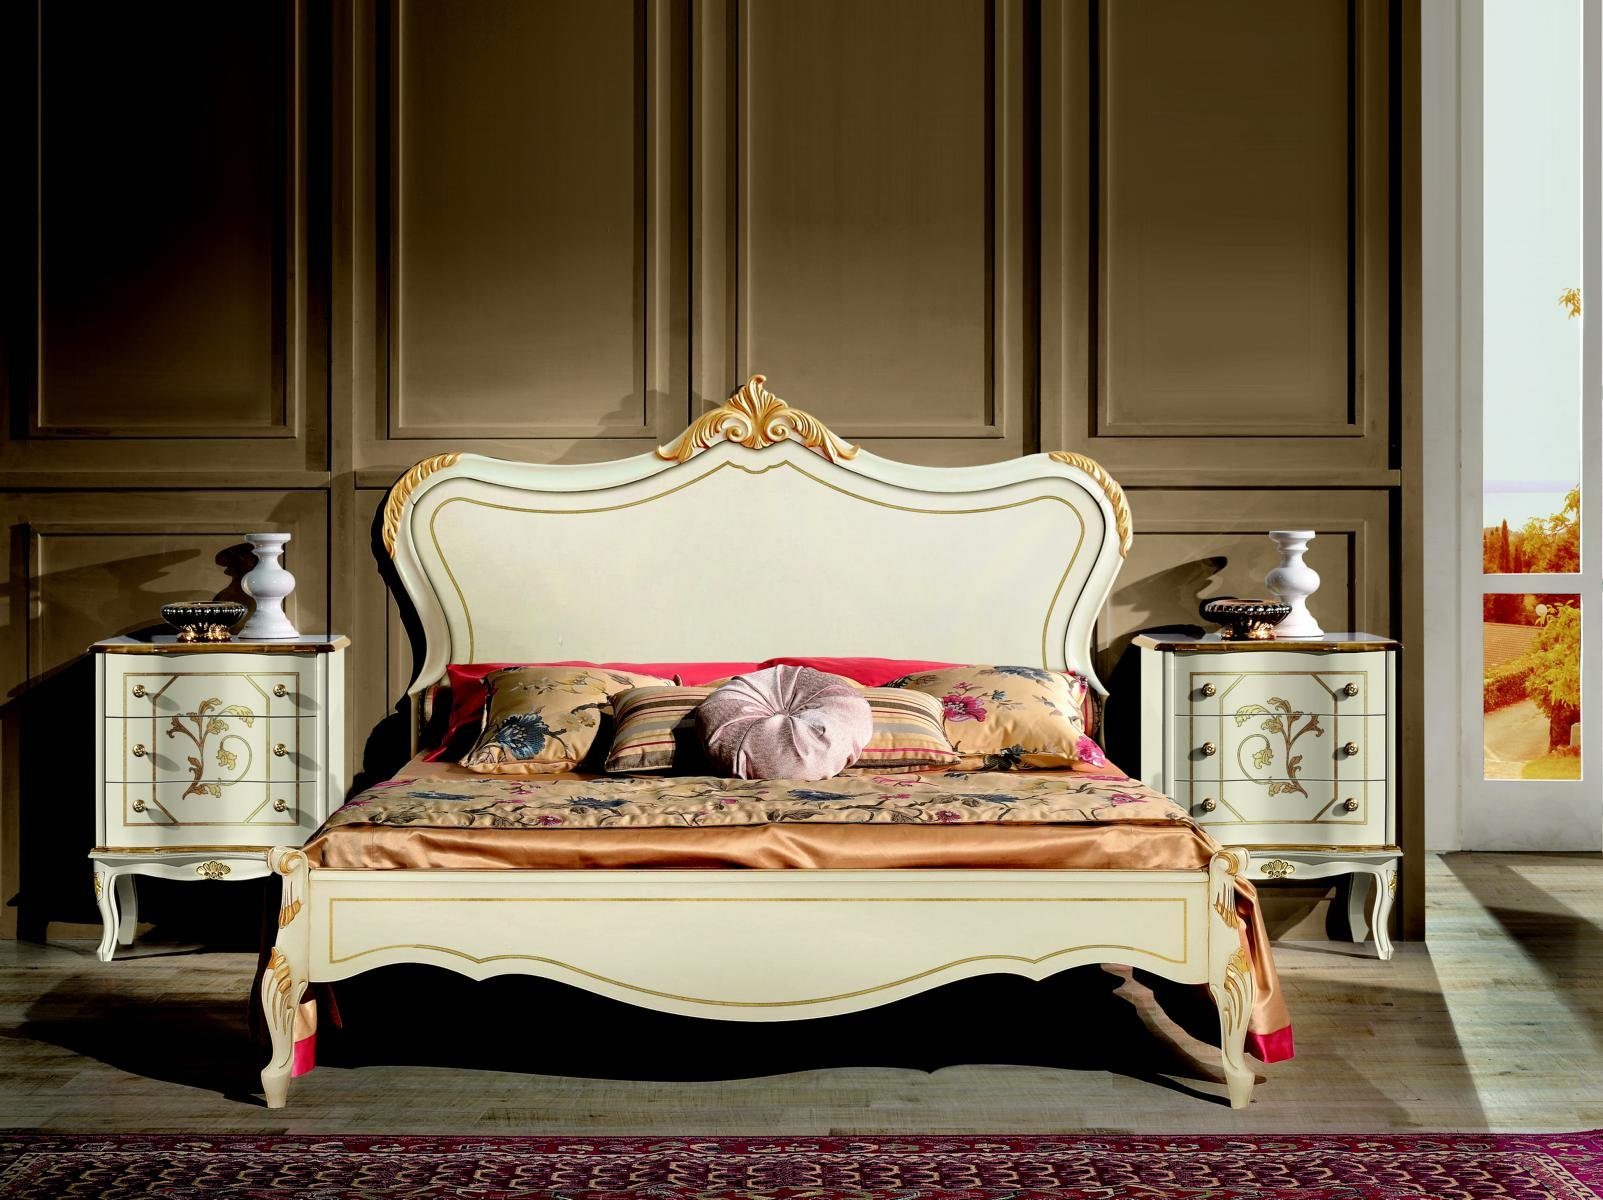 JVmoebel Bett »Design Luxus Bett Klassisches Bettgestell Holz Stil Barock Italienische  Möbel« online kaufen | OTTO